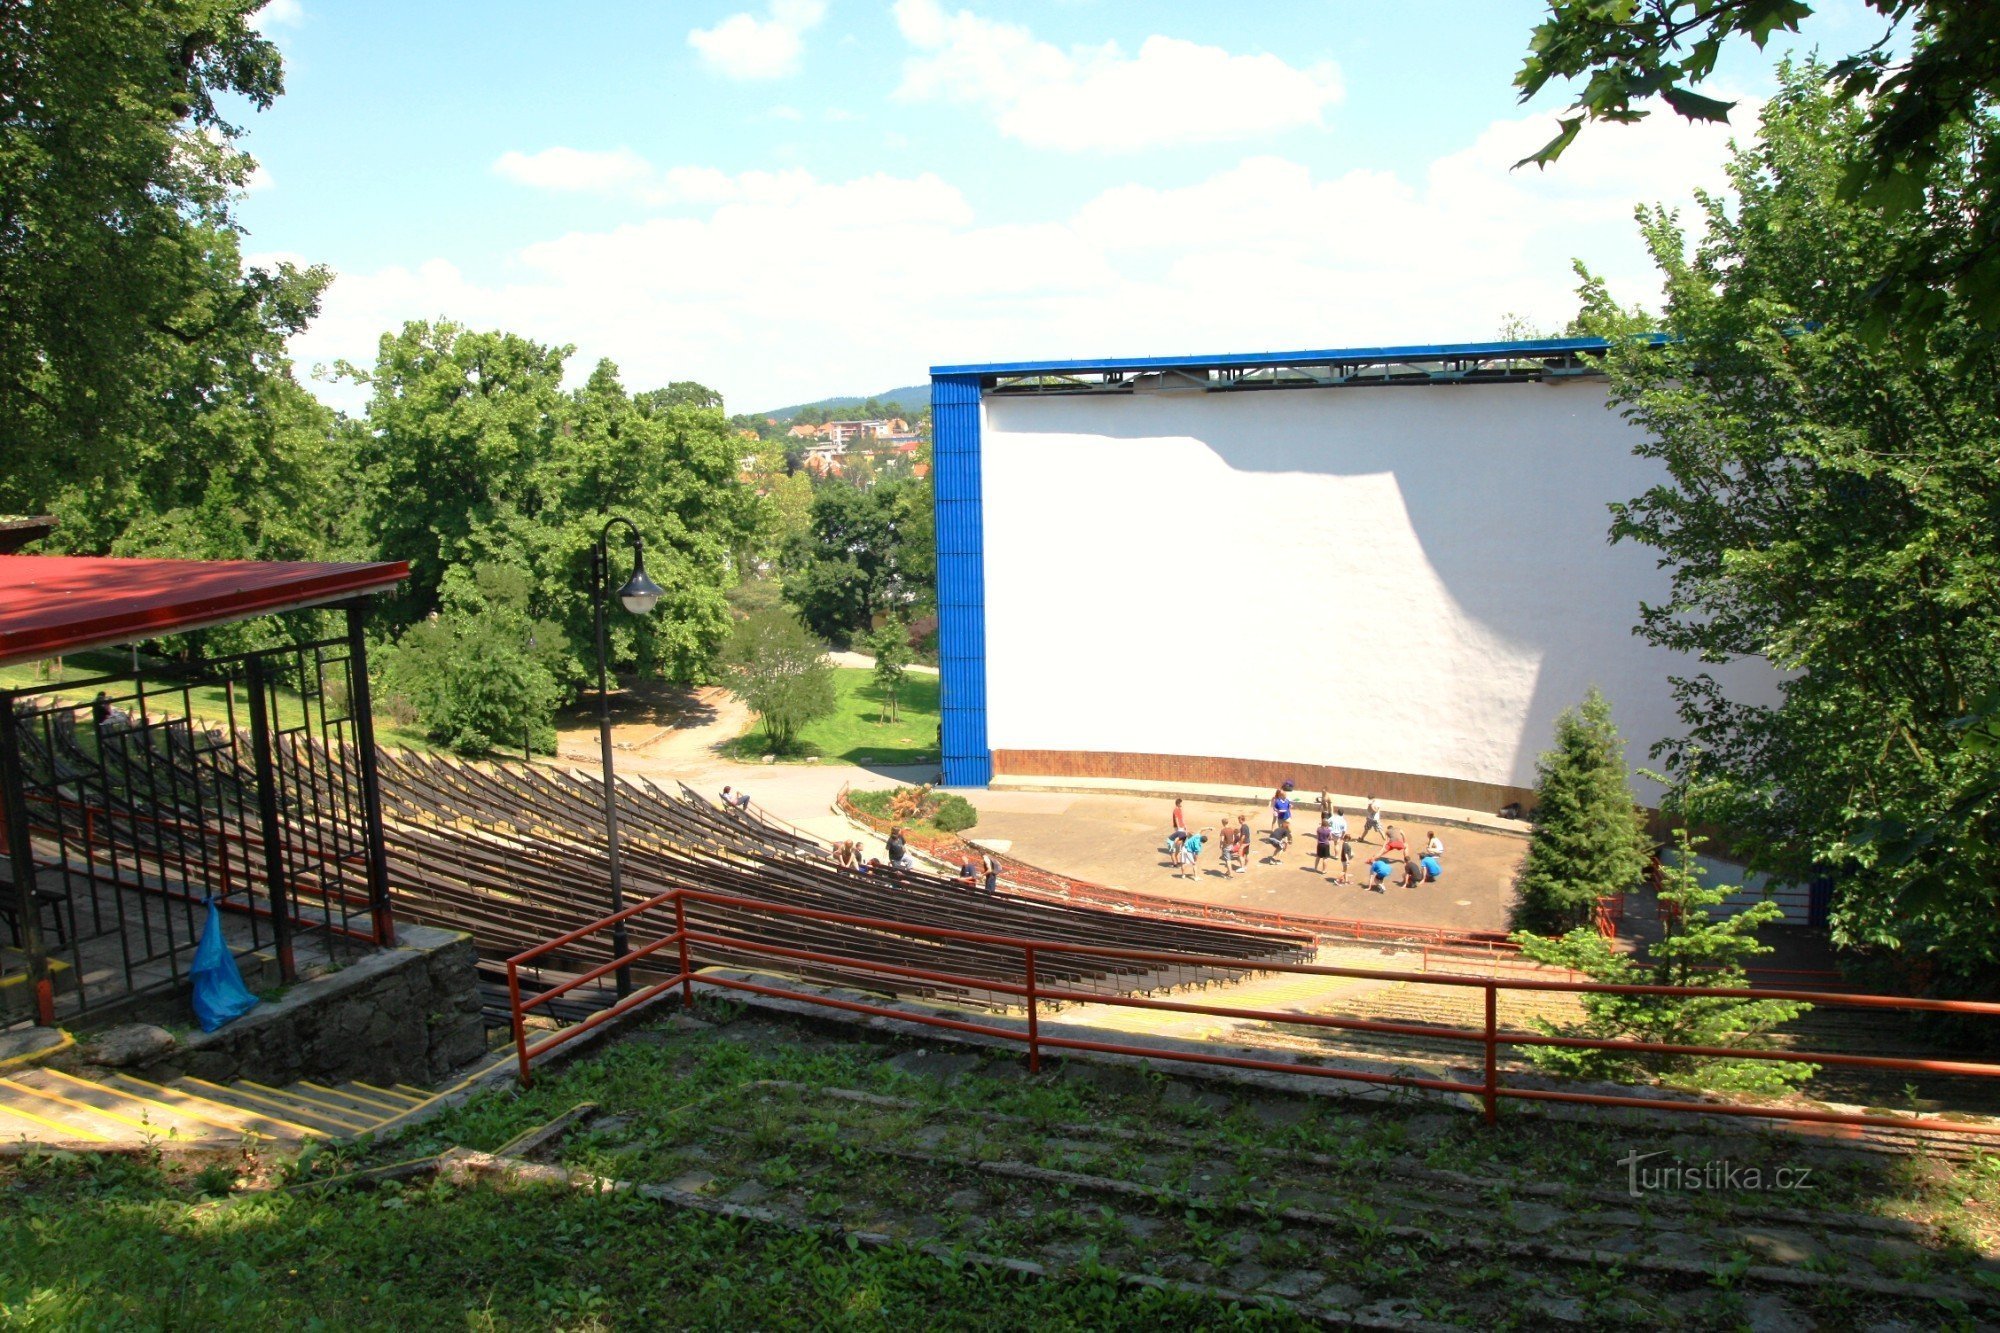 Ljetno kino smješteno je u prirodnom amfiteatru